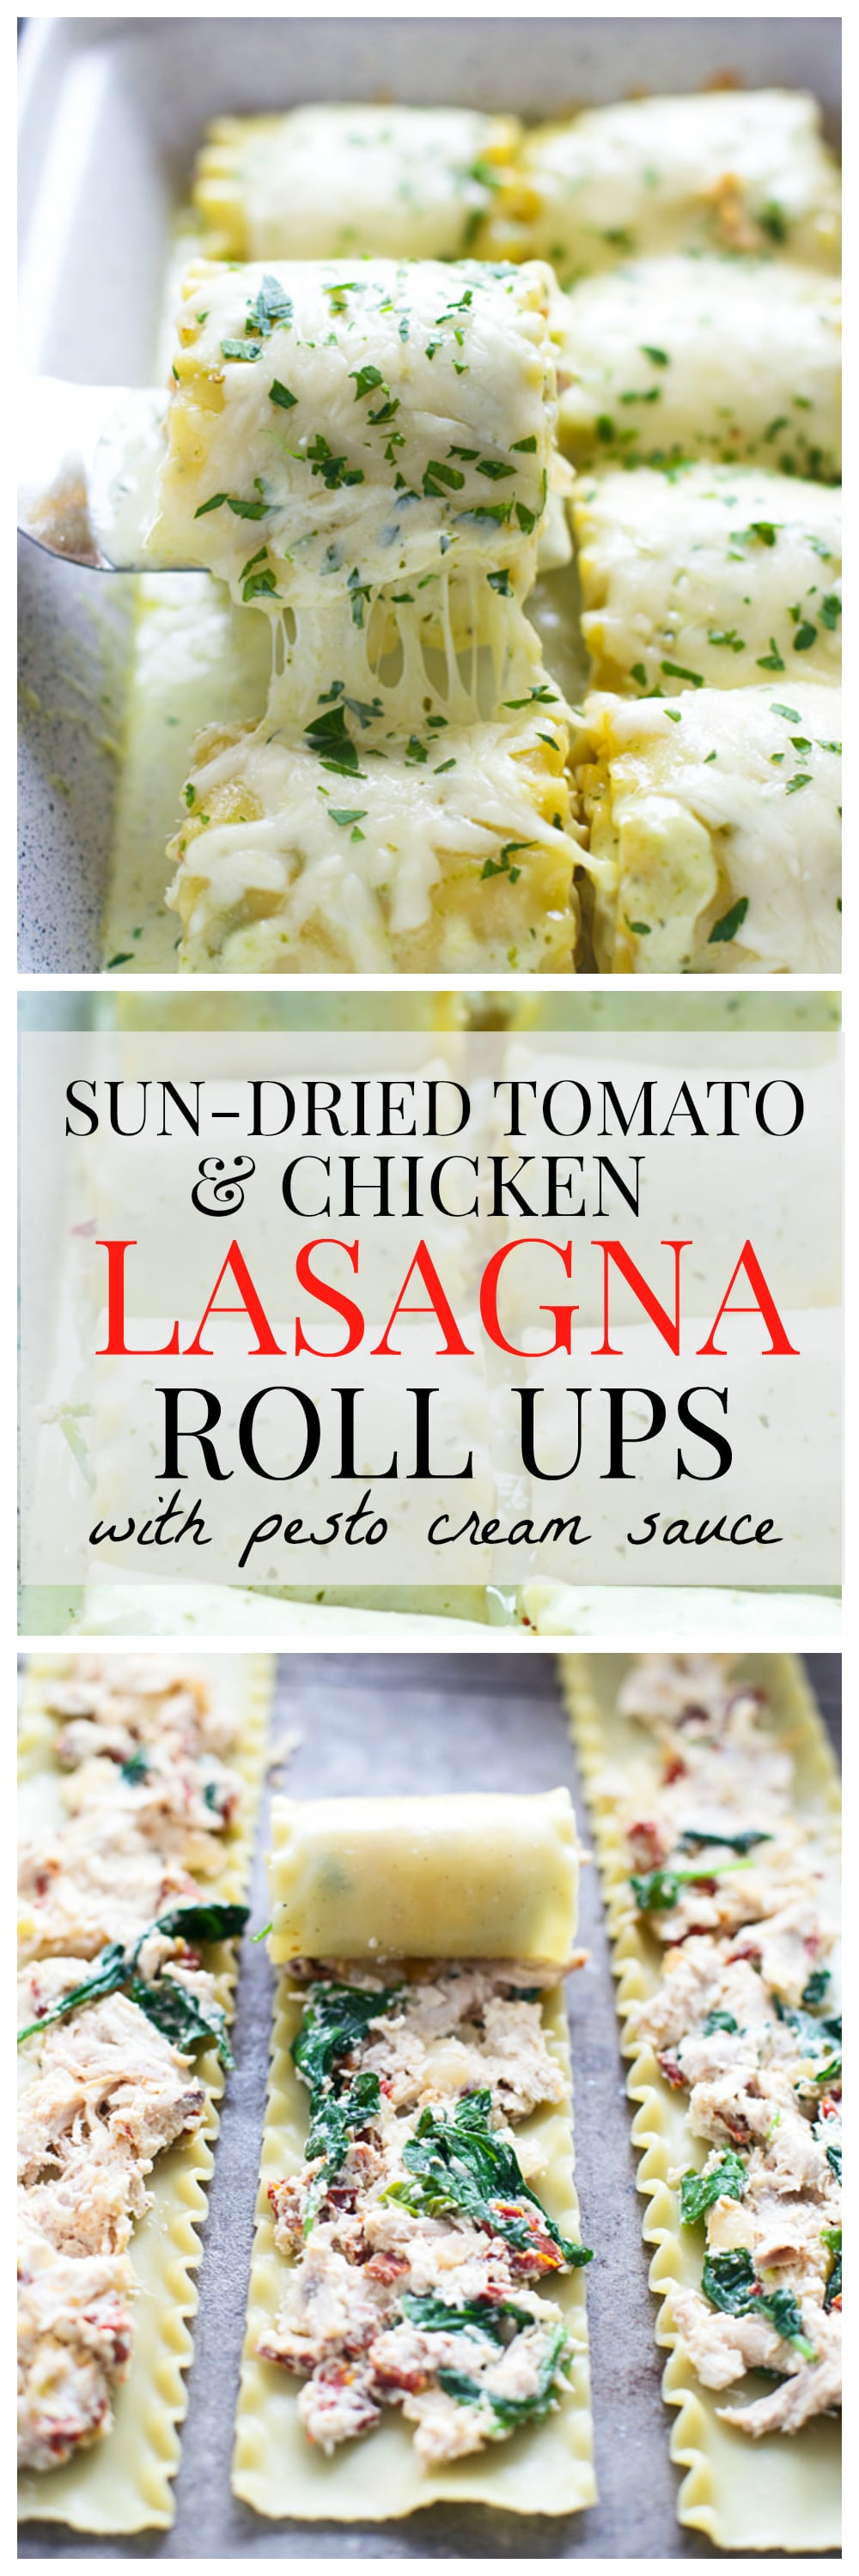 Sun-Dried Tomato and Chicken Lasagna Roll Ups with Pesto Cream